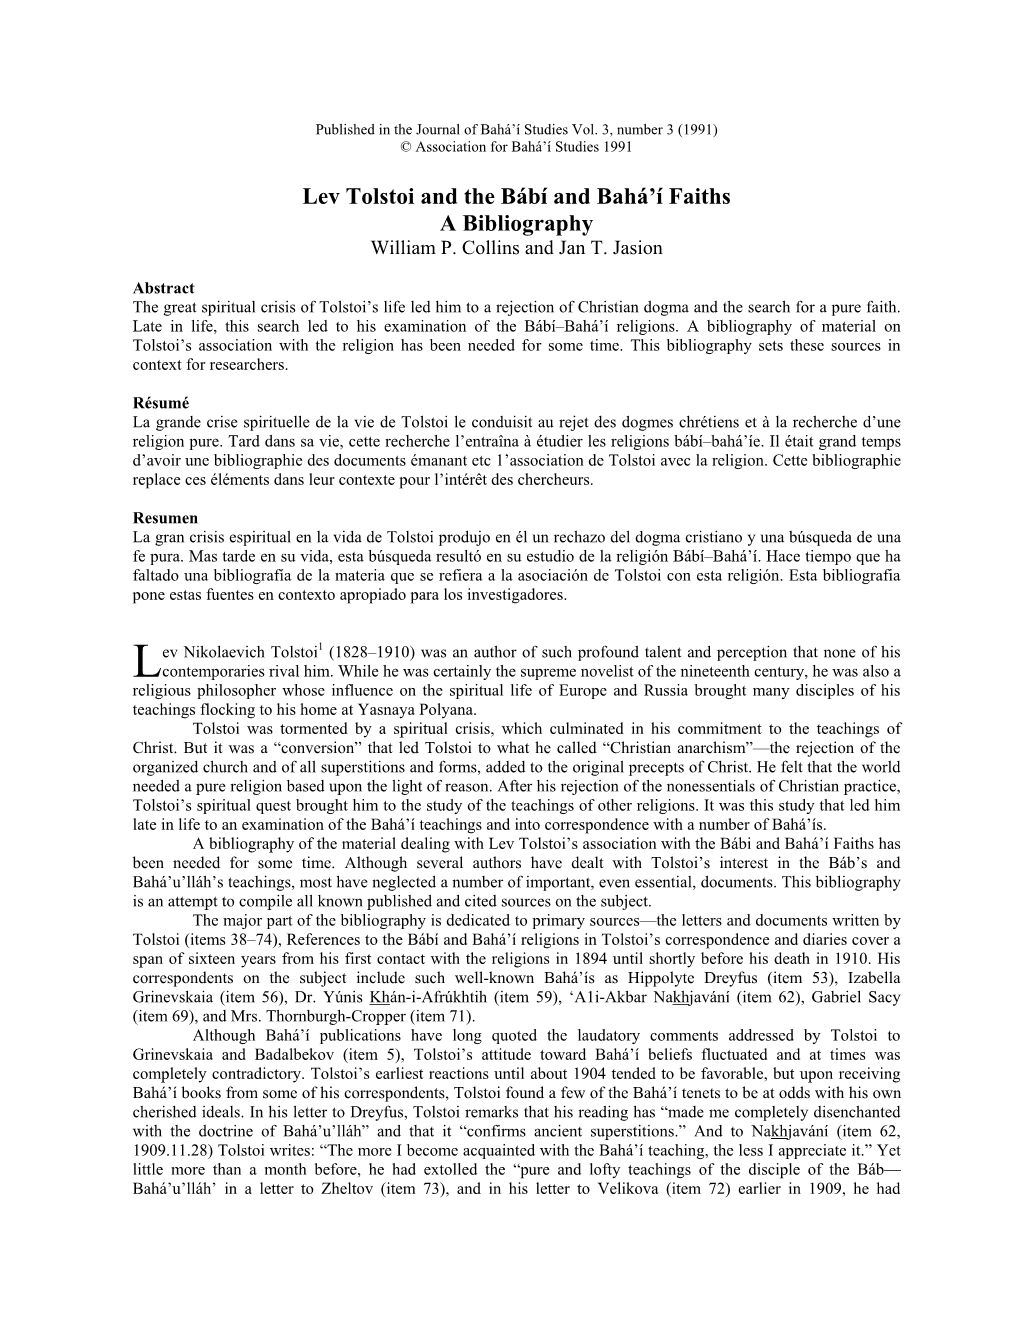 Lev Tolstoi and the Bábí and Bahá'í Faiths a Bibliography